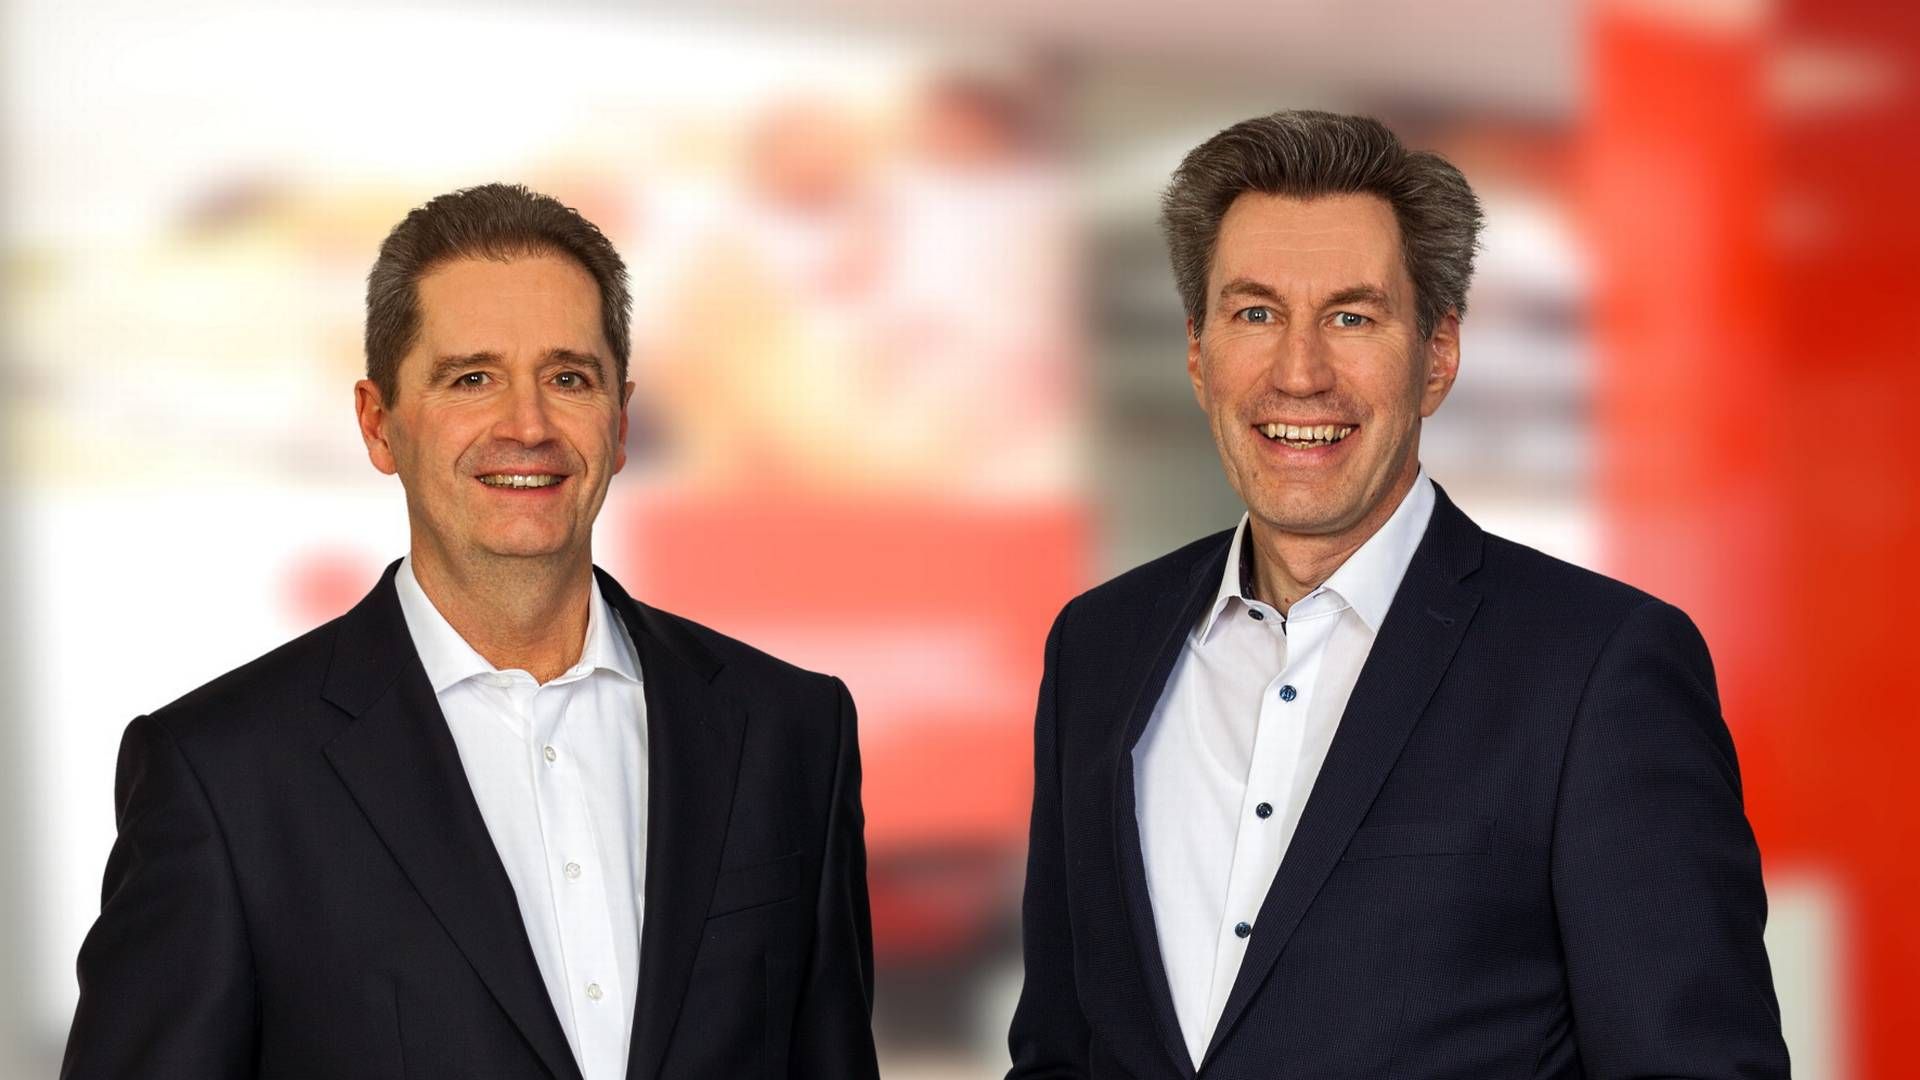 Vorstandsteam der Sparkasse Südholstein: Eduard Schlett und Martin Deertz (von links) | Foto: Sparkasse Südholstein